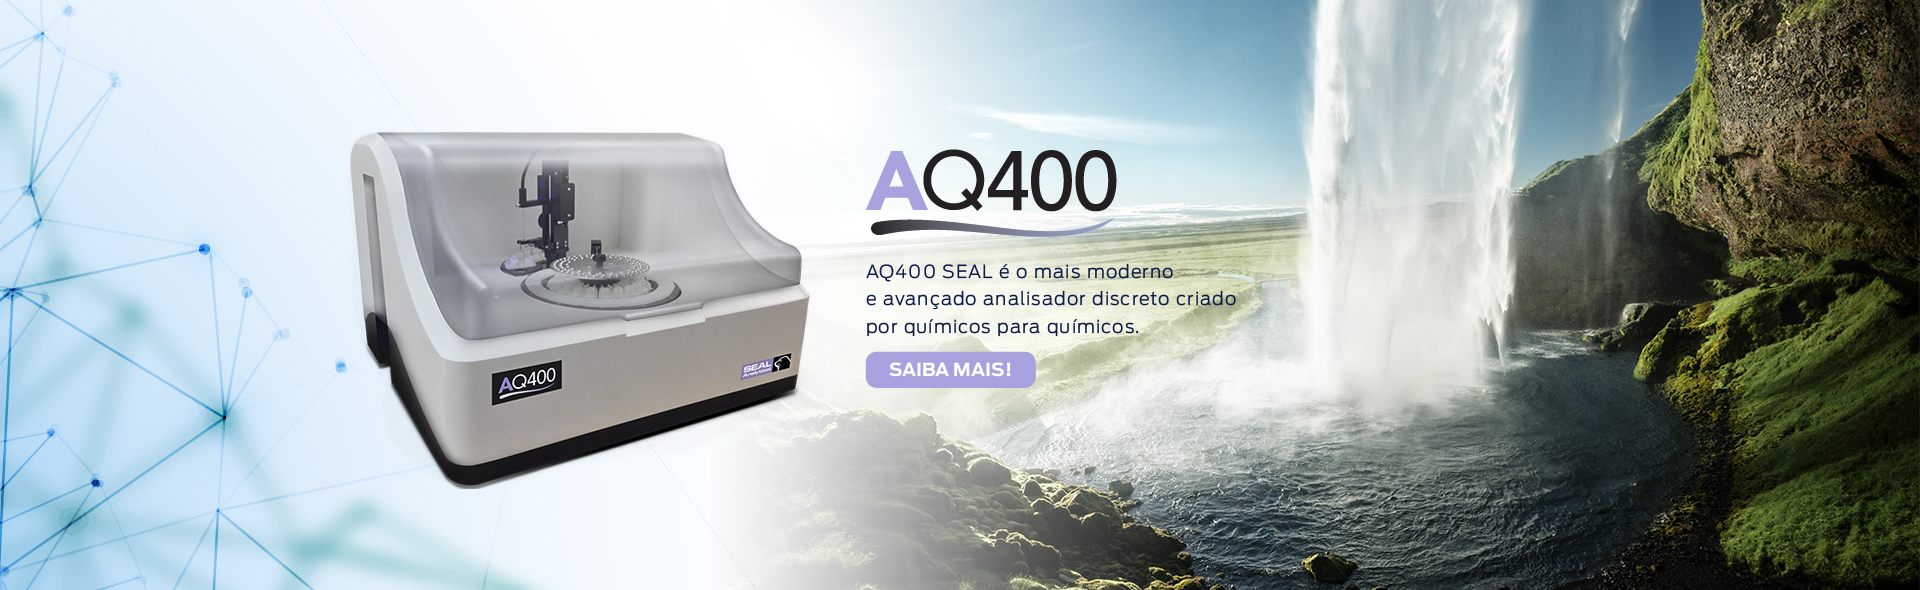 AQ400 SEAL